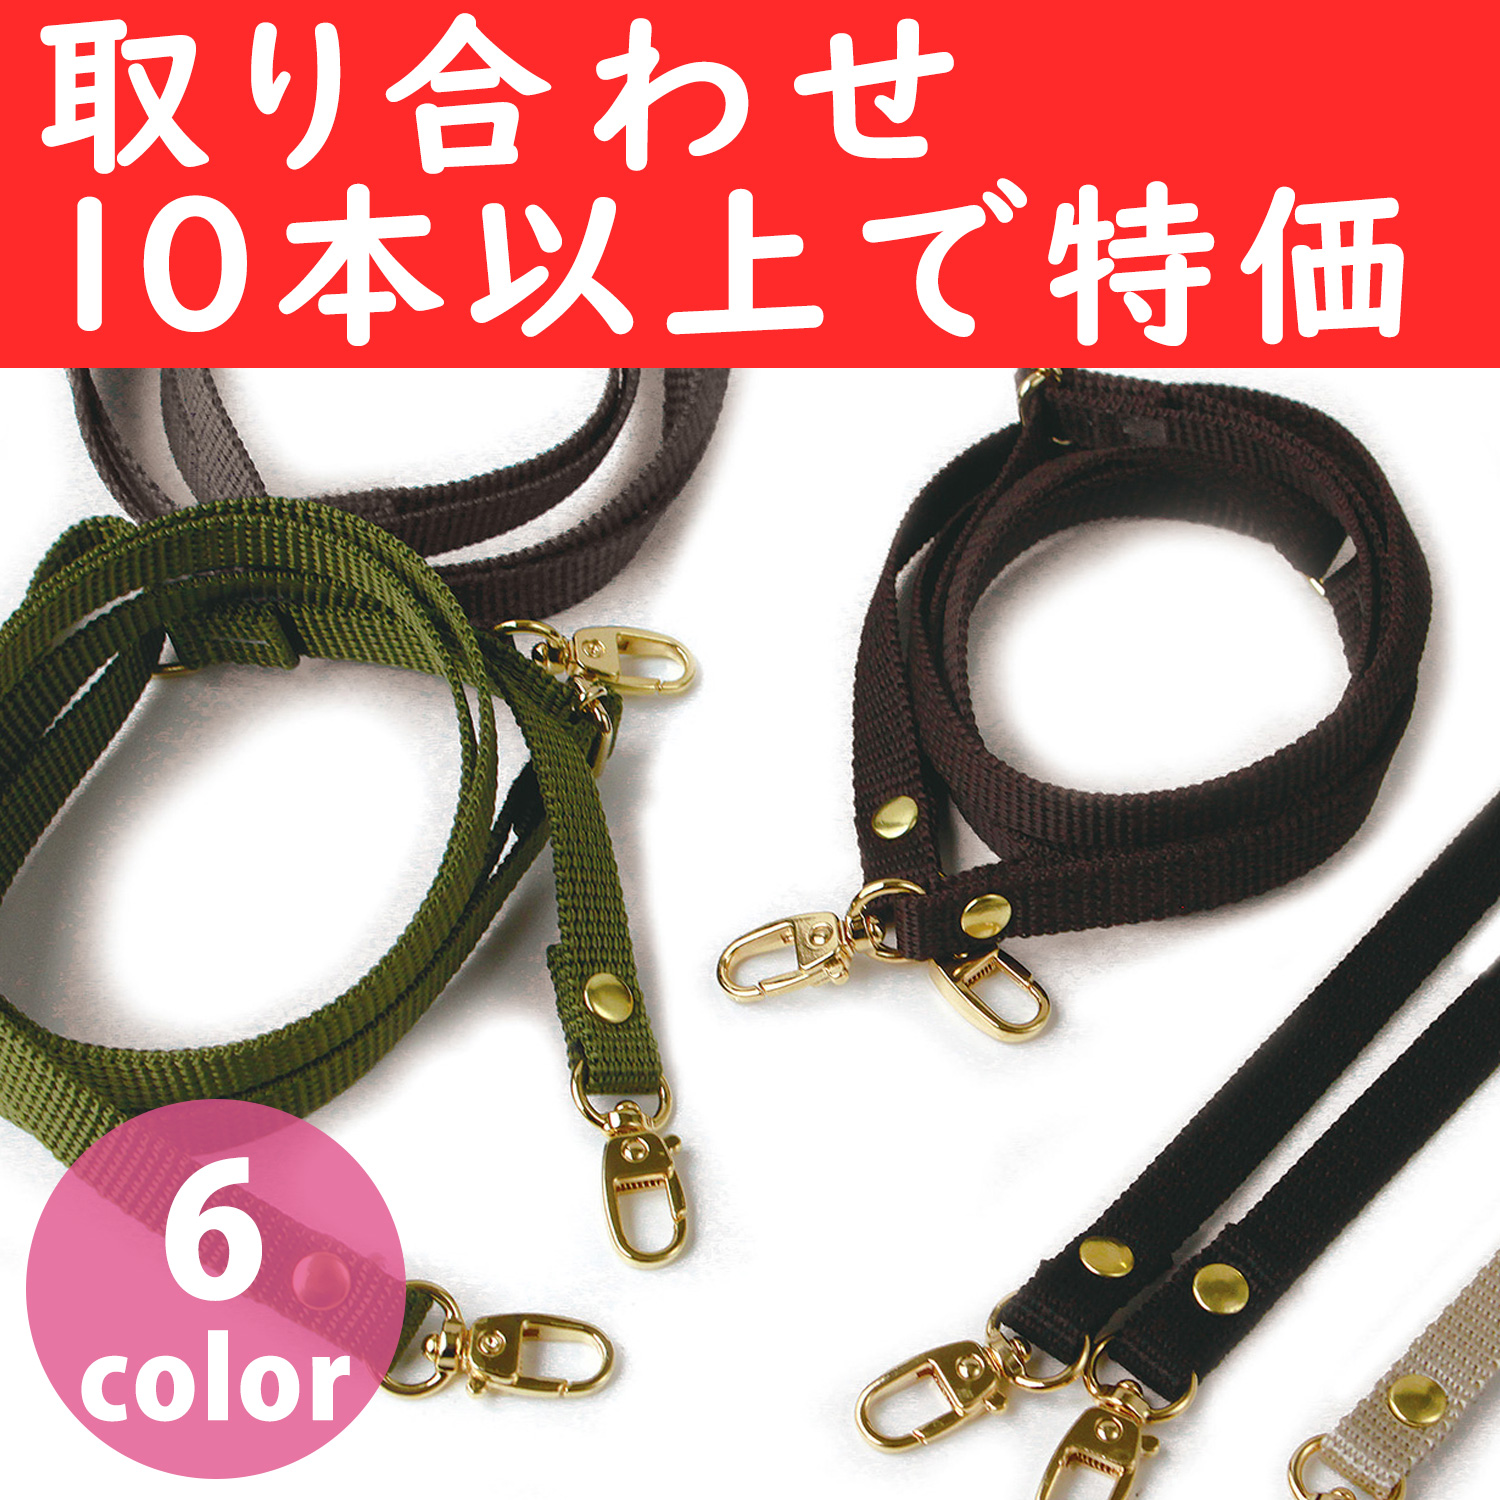 【新緑フェア】S1140-G-OVER10 テープショルダー 金具ゴールド 取り合わせ10本以上で特価 (本)